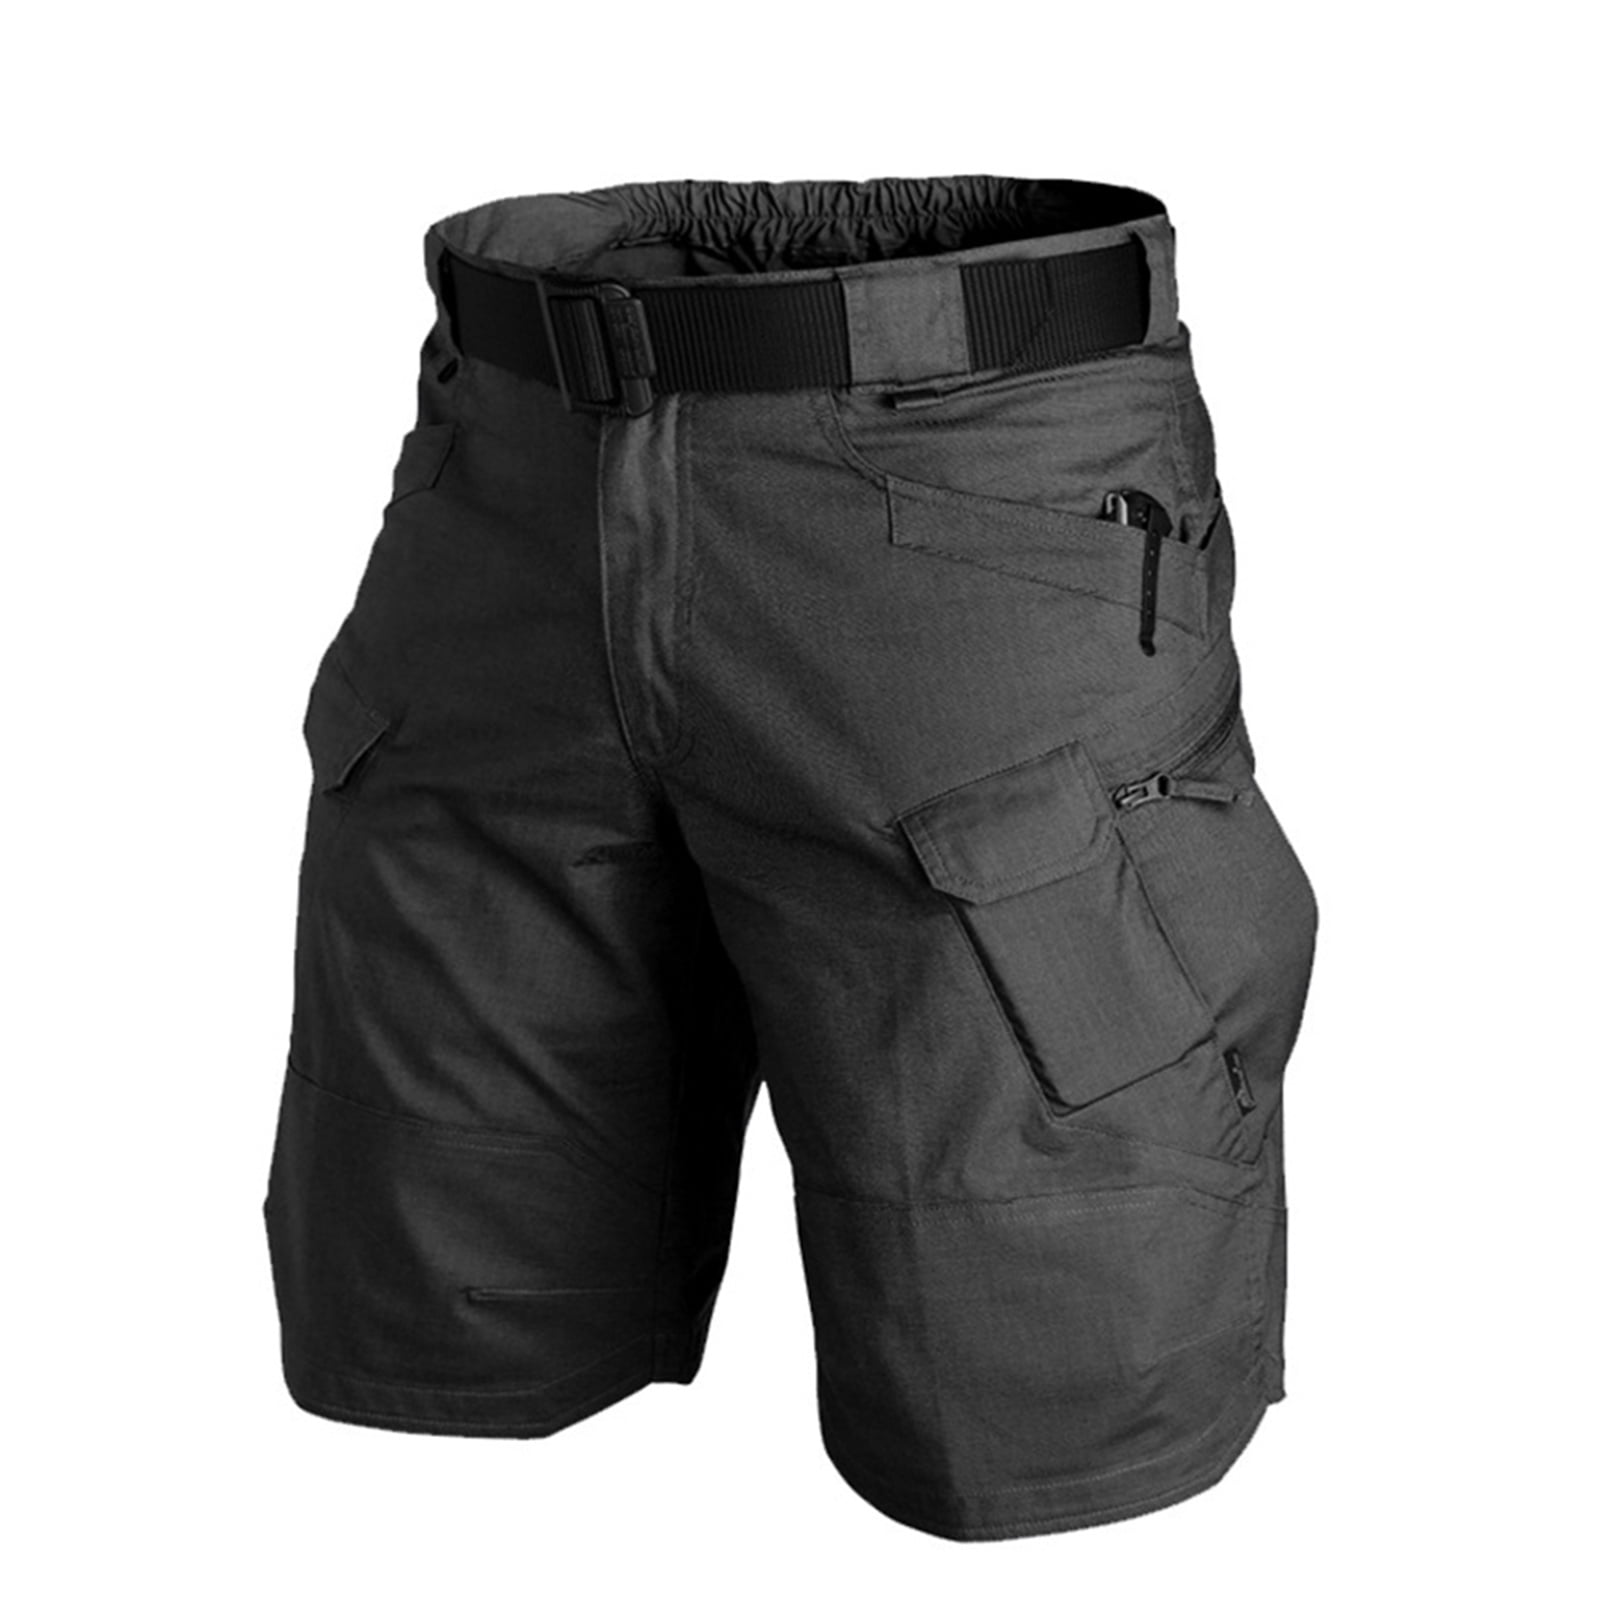 Notime Men Urban Tactical Military Cargo Shorts Cotton Outdoor Camo